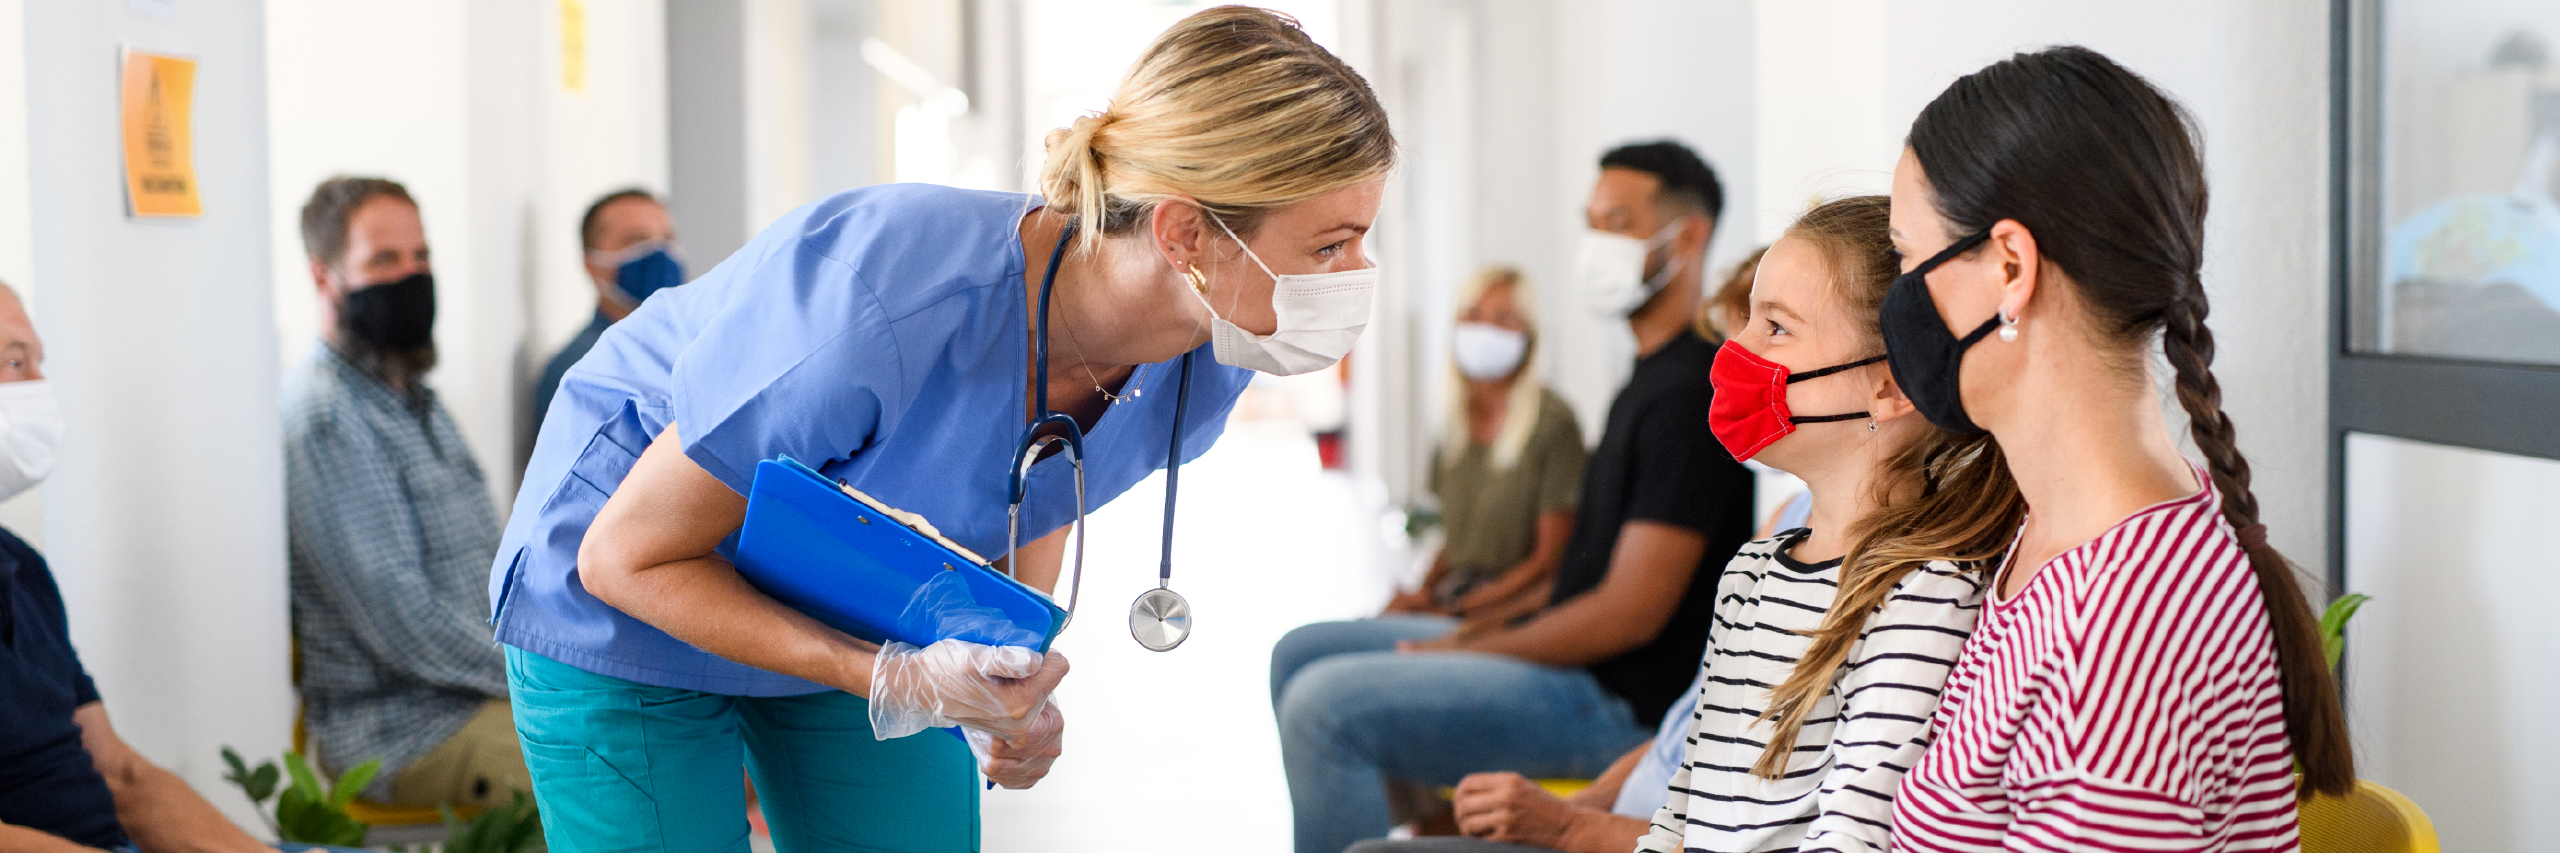 Infirmière et patients dans une salle d'attente portant un masque pour réduire la transmission du virus